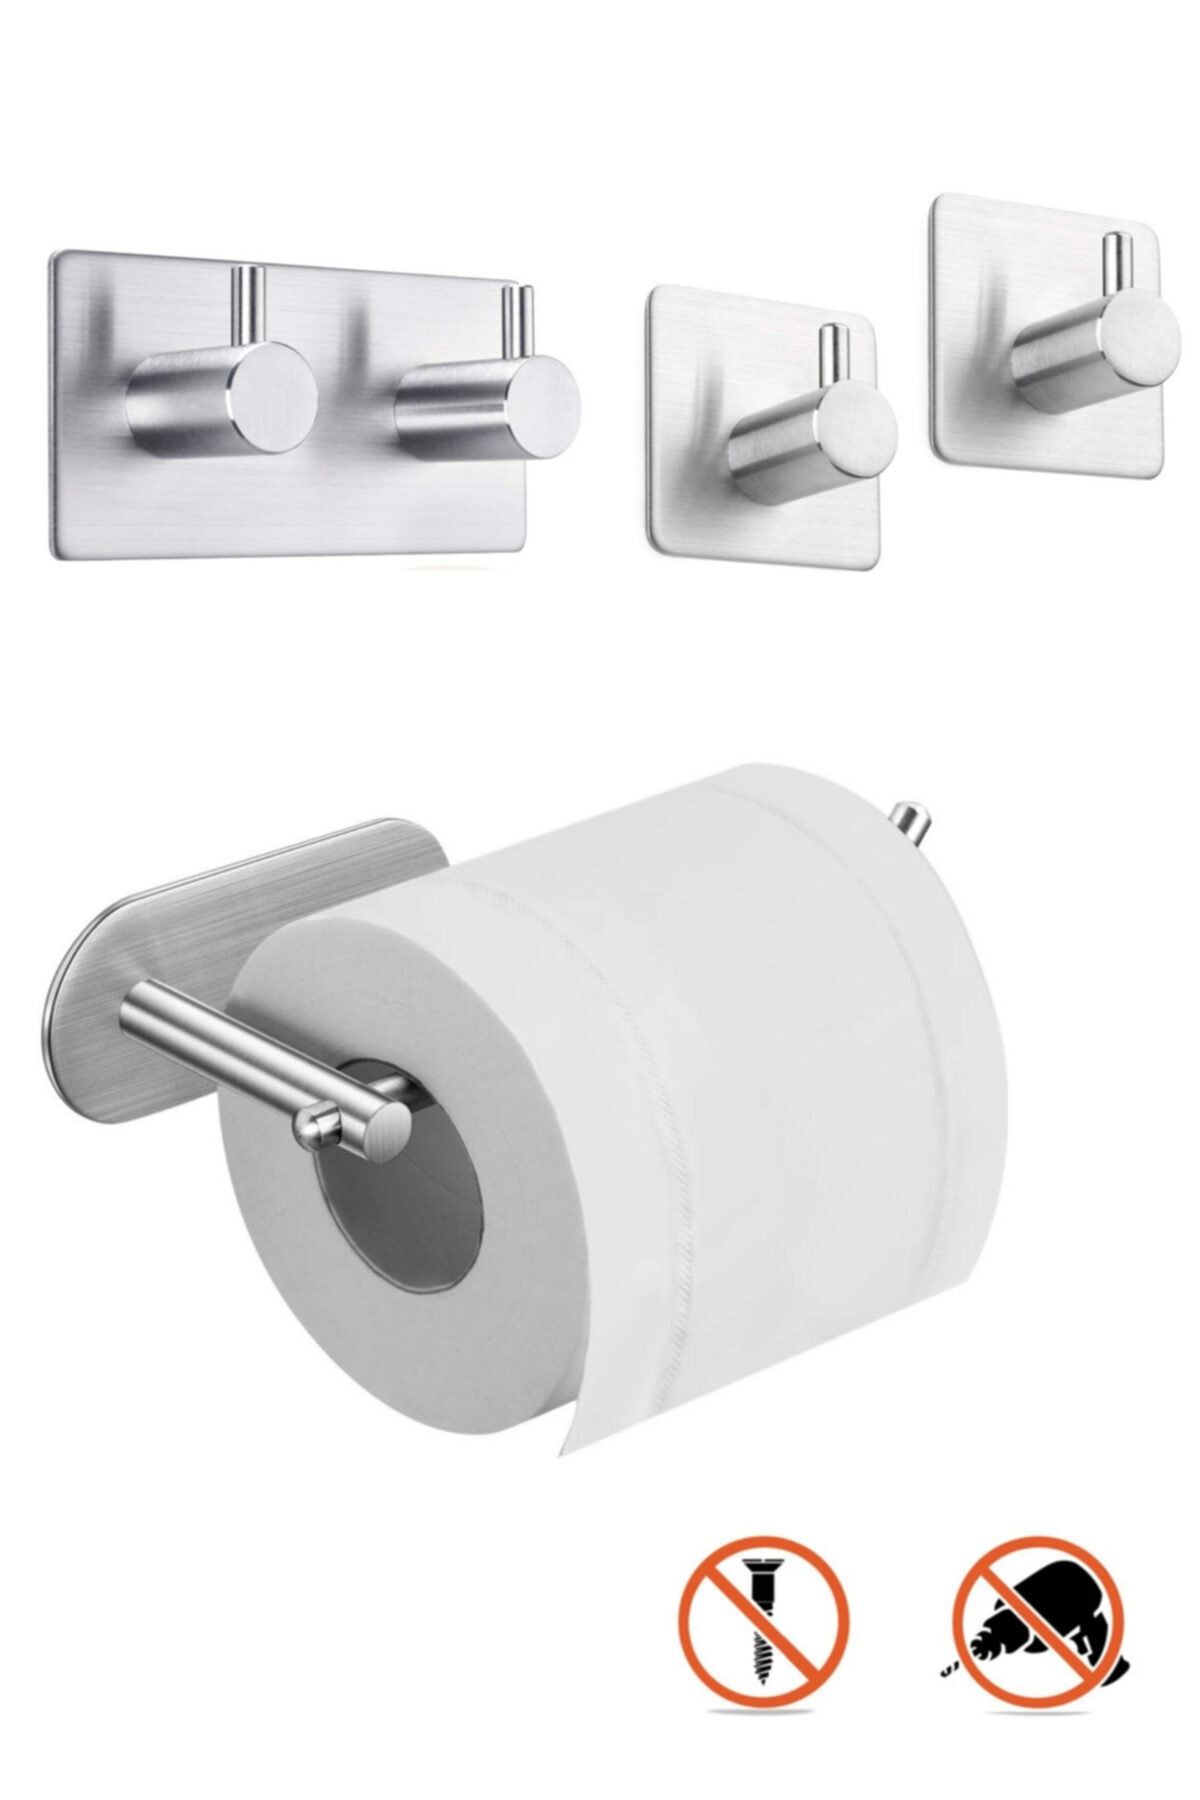 DELTAHOME Paslanmaz Çelik Set Tuvalet Kağıtlığı Bornoz Askısı 2xhavluluk Yapışkanlı